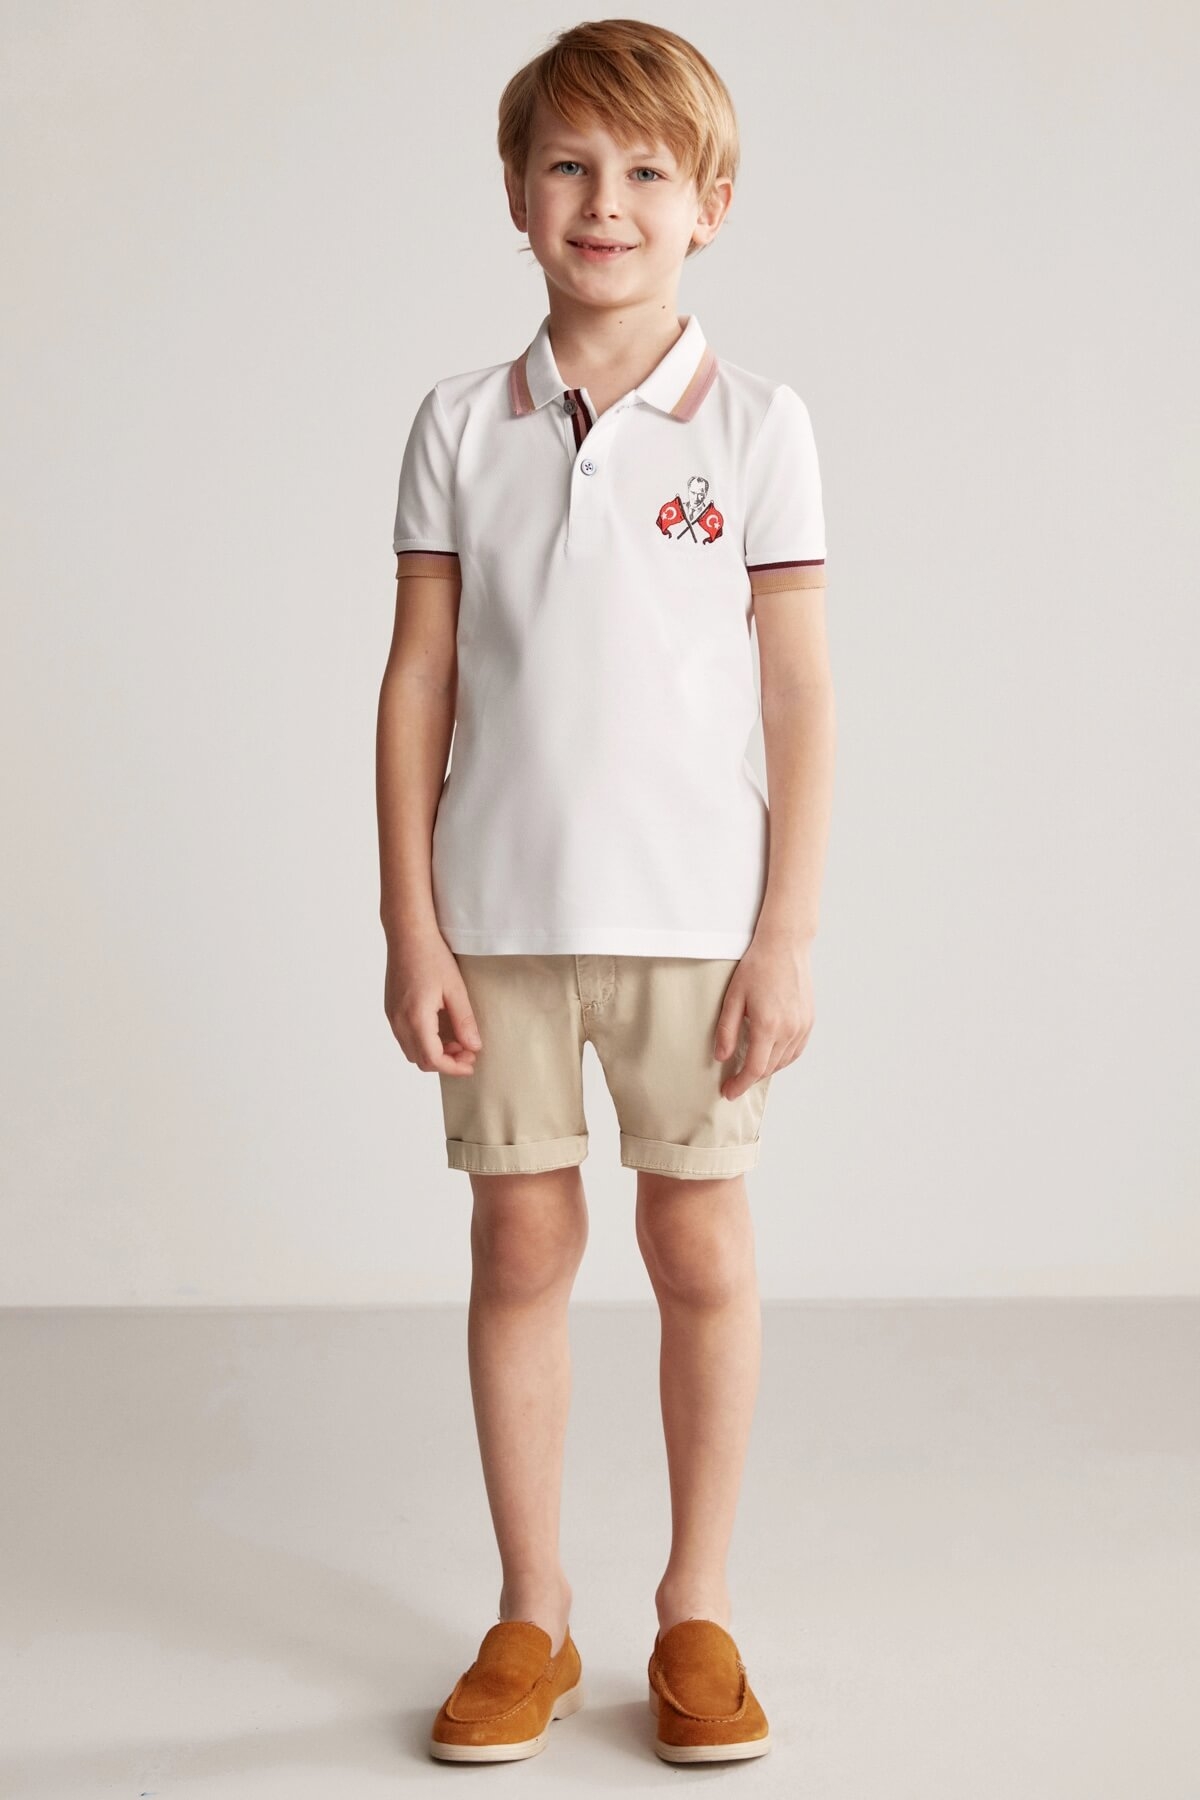 Atatürk ve Türk Bayrağı Nakışlı Çocuk Polo T-Shirt